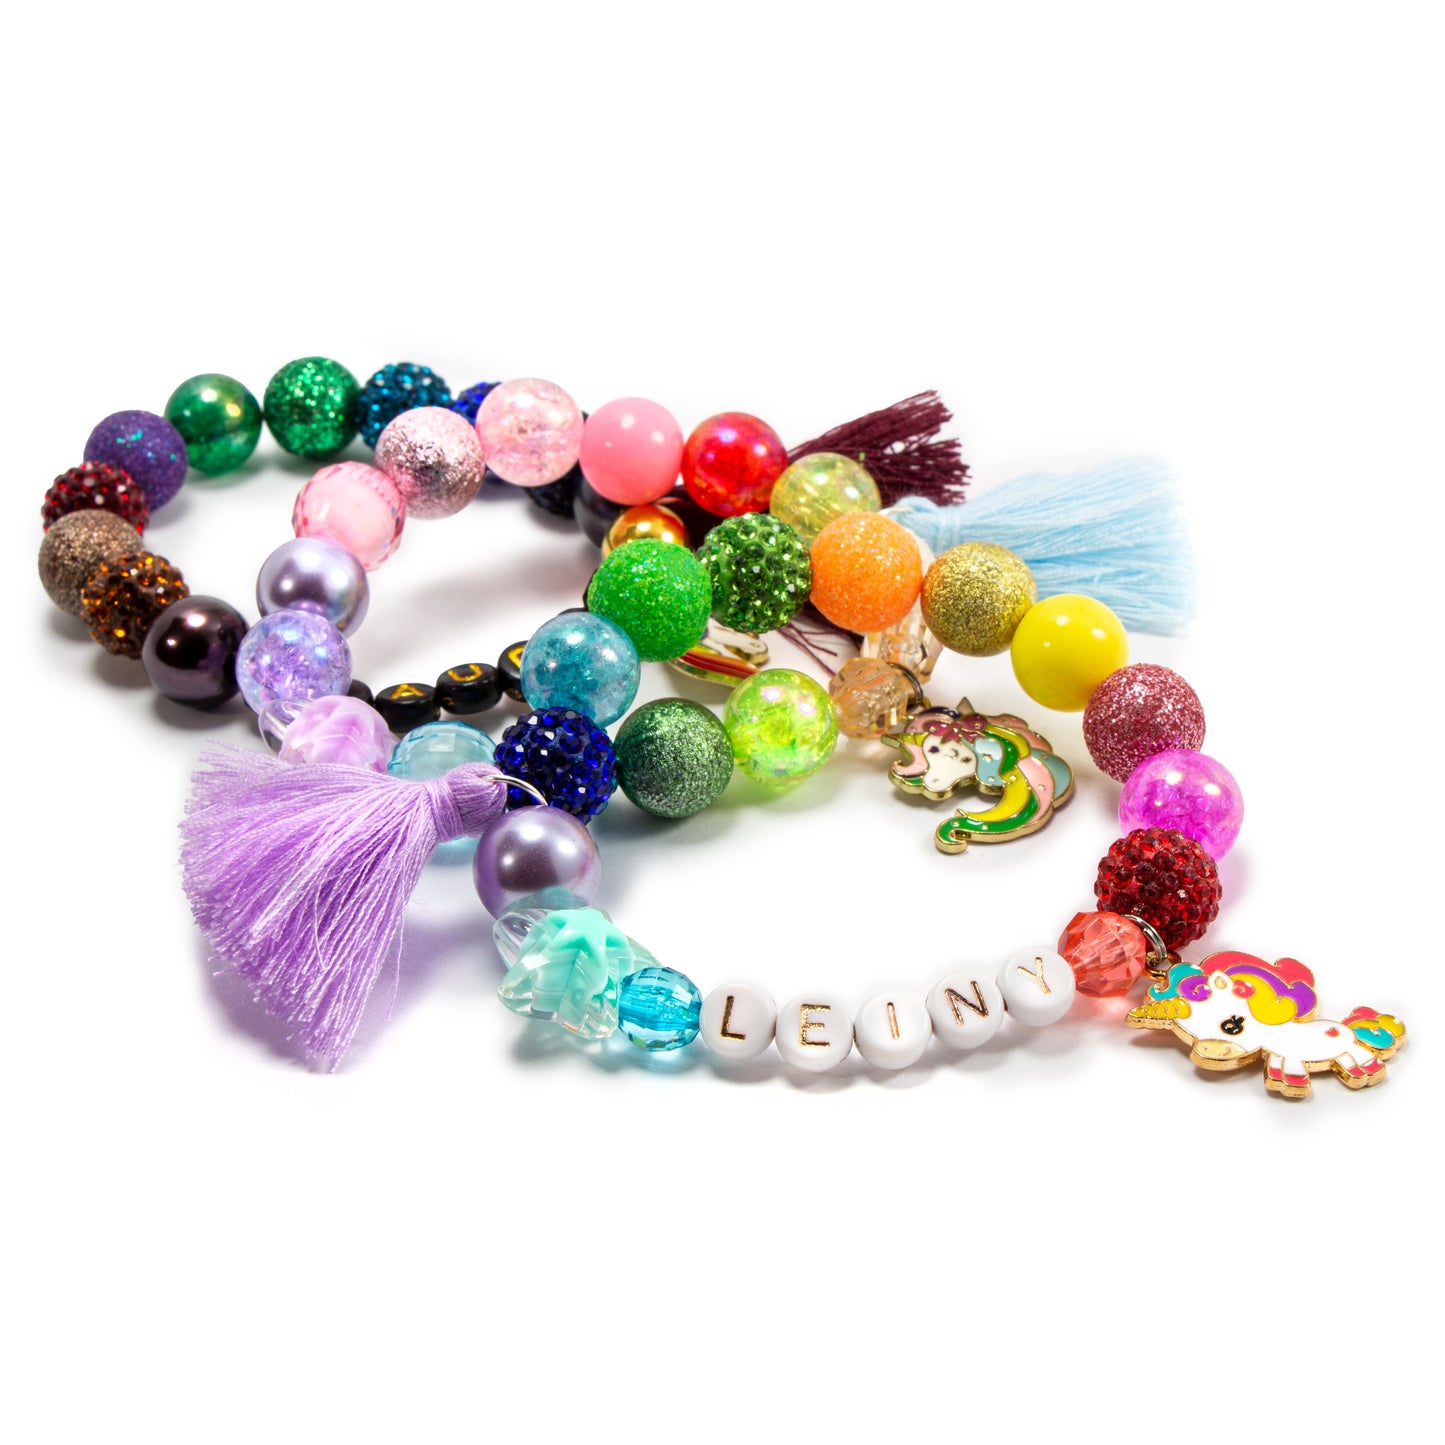 Girls unicorn charm pastel tassel bracelet / Personalized jewelry stretch